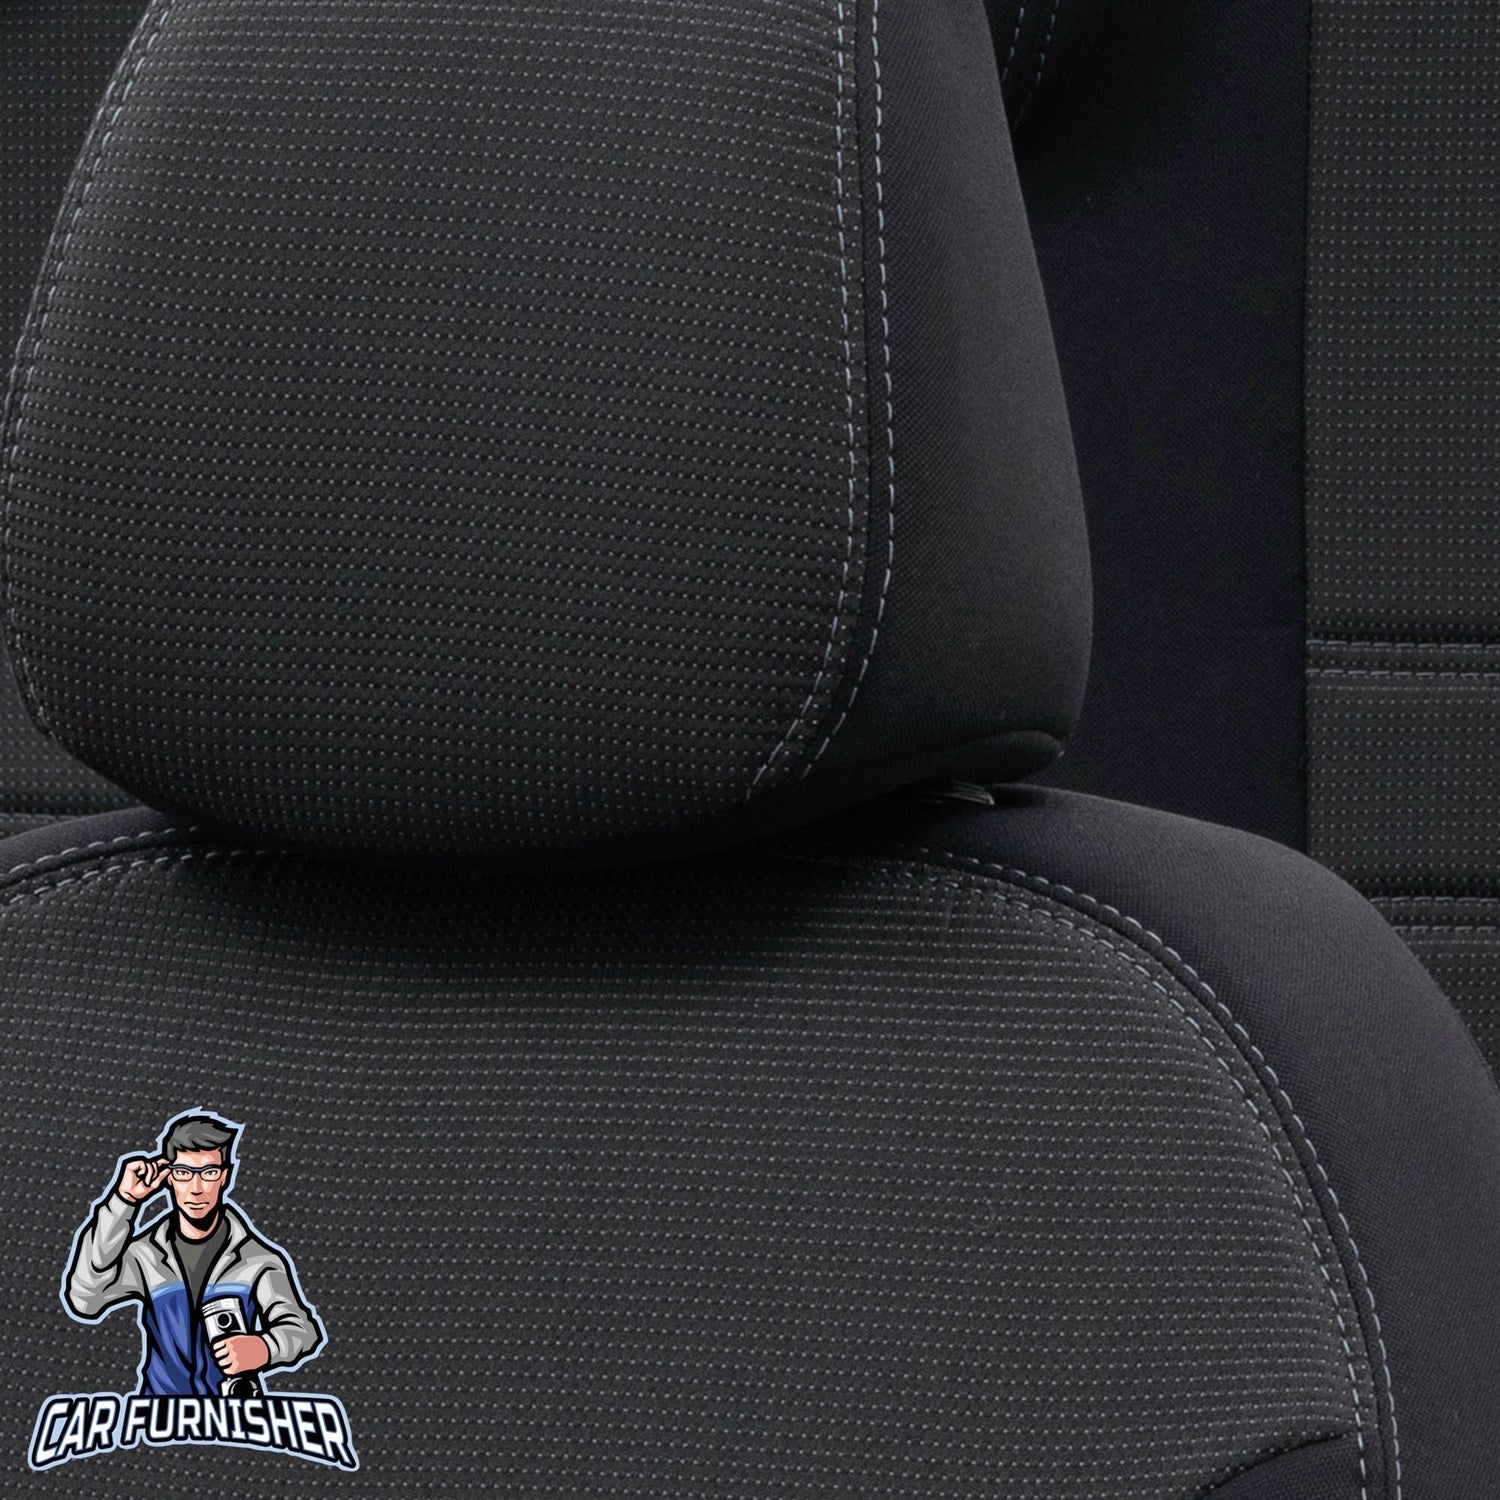 Chevrolet Captiva Seat Cover Original Jacquard Design Dark Gray Jacquard Fabric